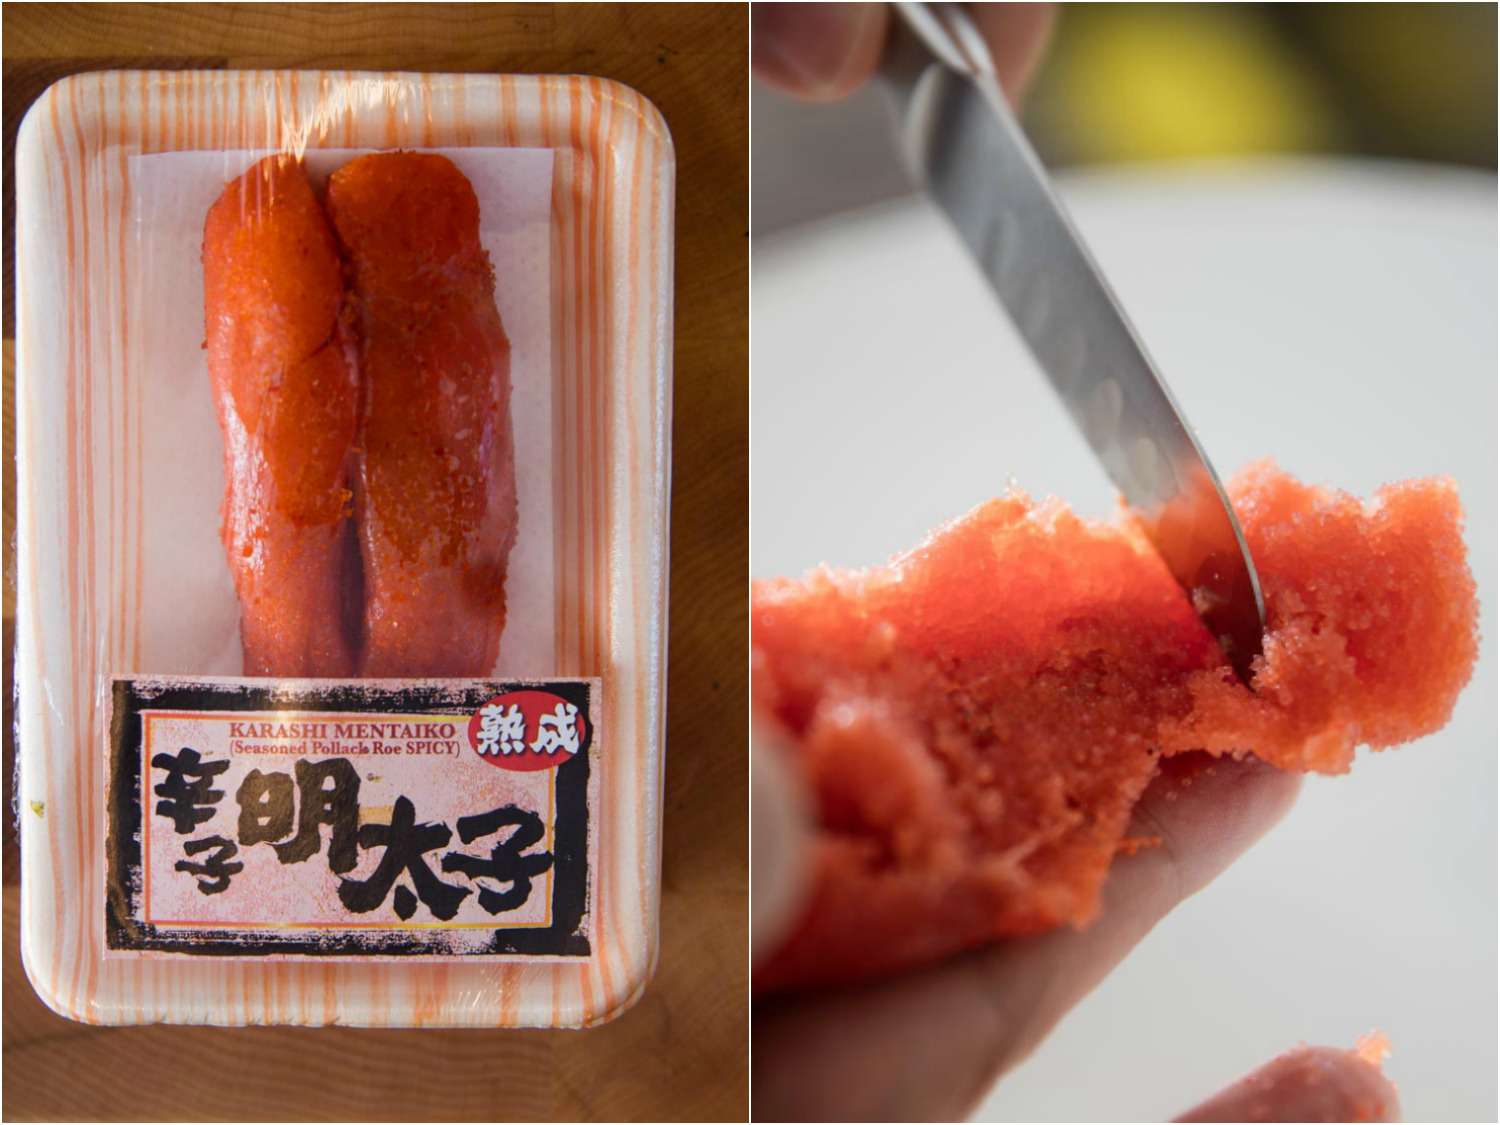 两个图像。在左边,一揽子karashi mentaiko。右边,mentaiko砧板,用小刀被分开。